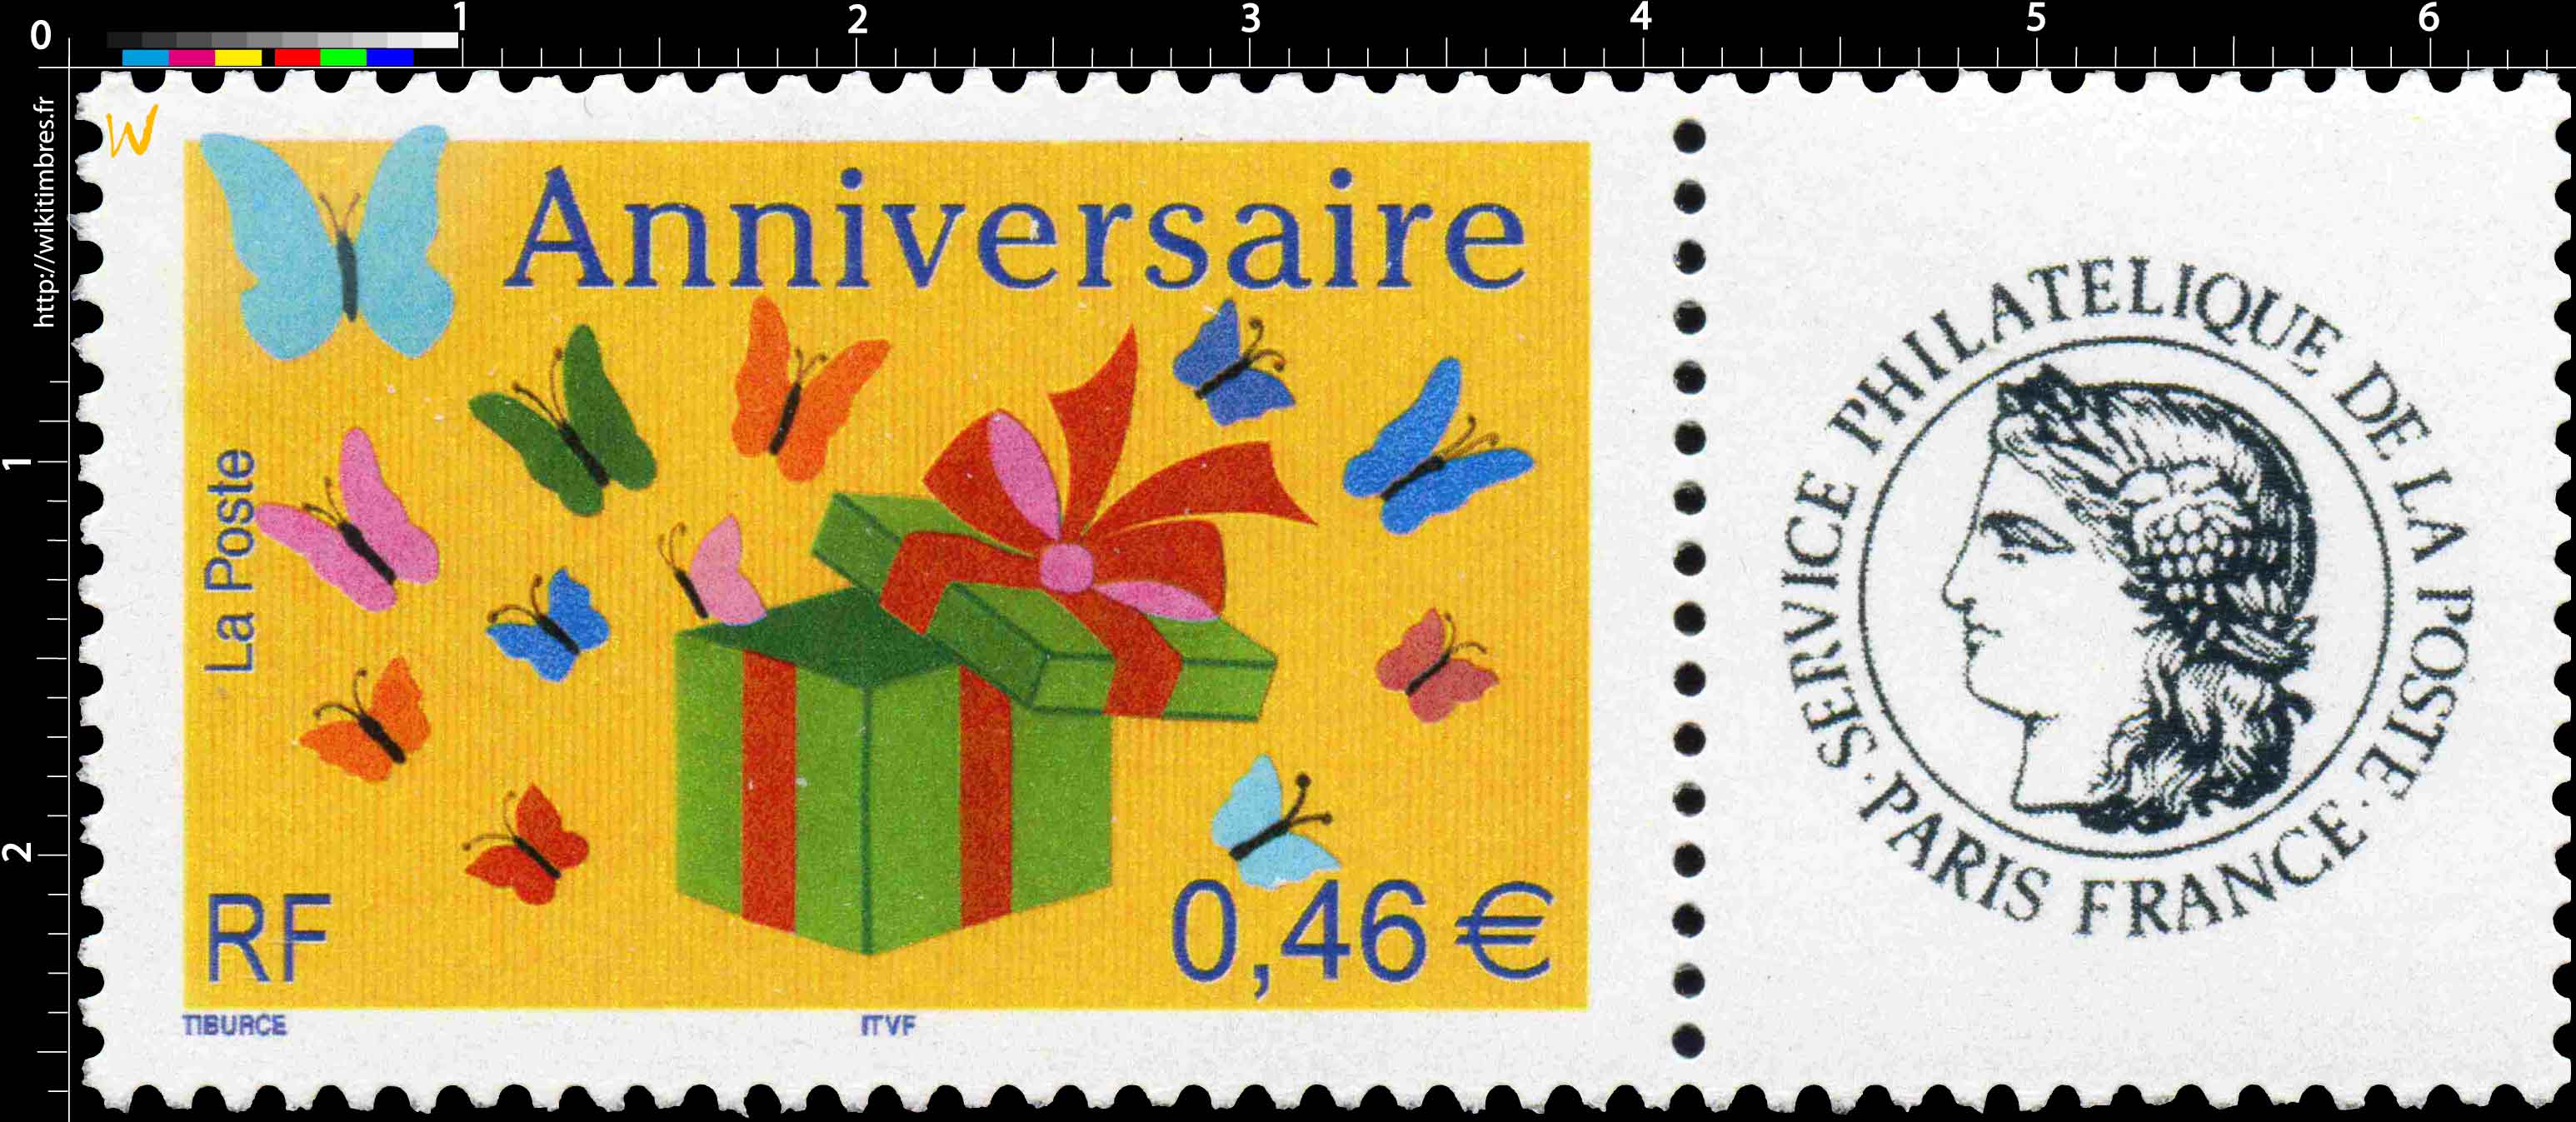 Anniversaire Les timbres personnalisés